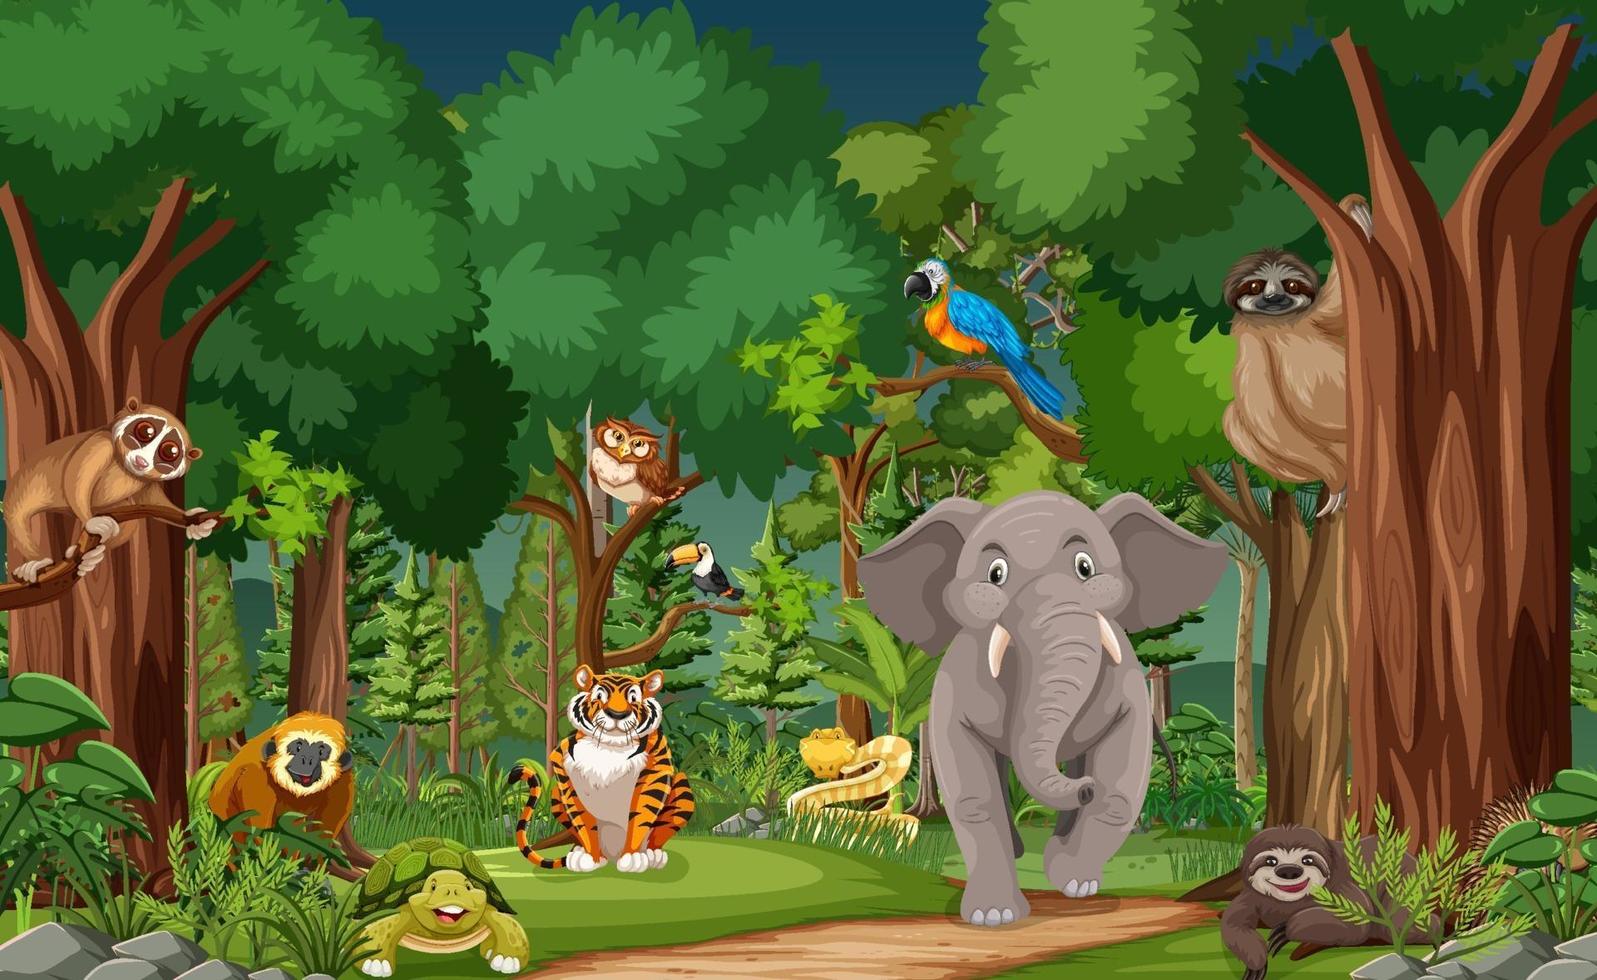 personaje de dibujos animados de animales salvajes en la escena del bosque vector